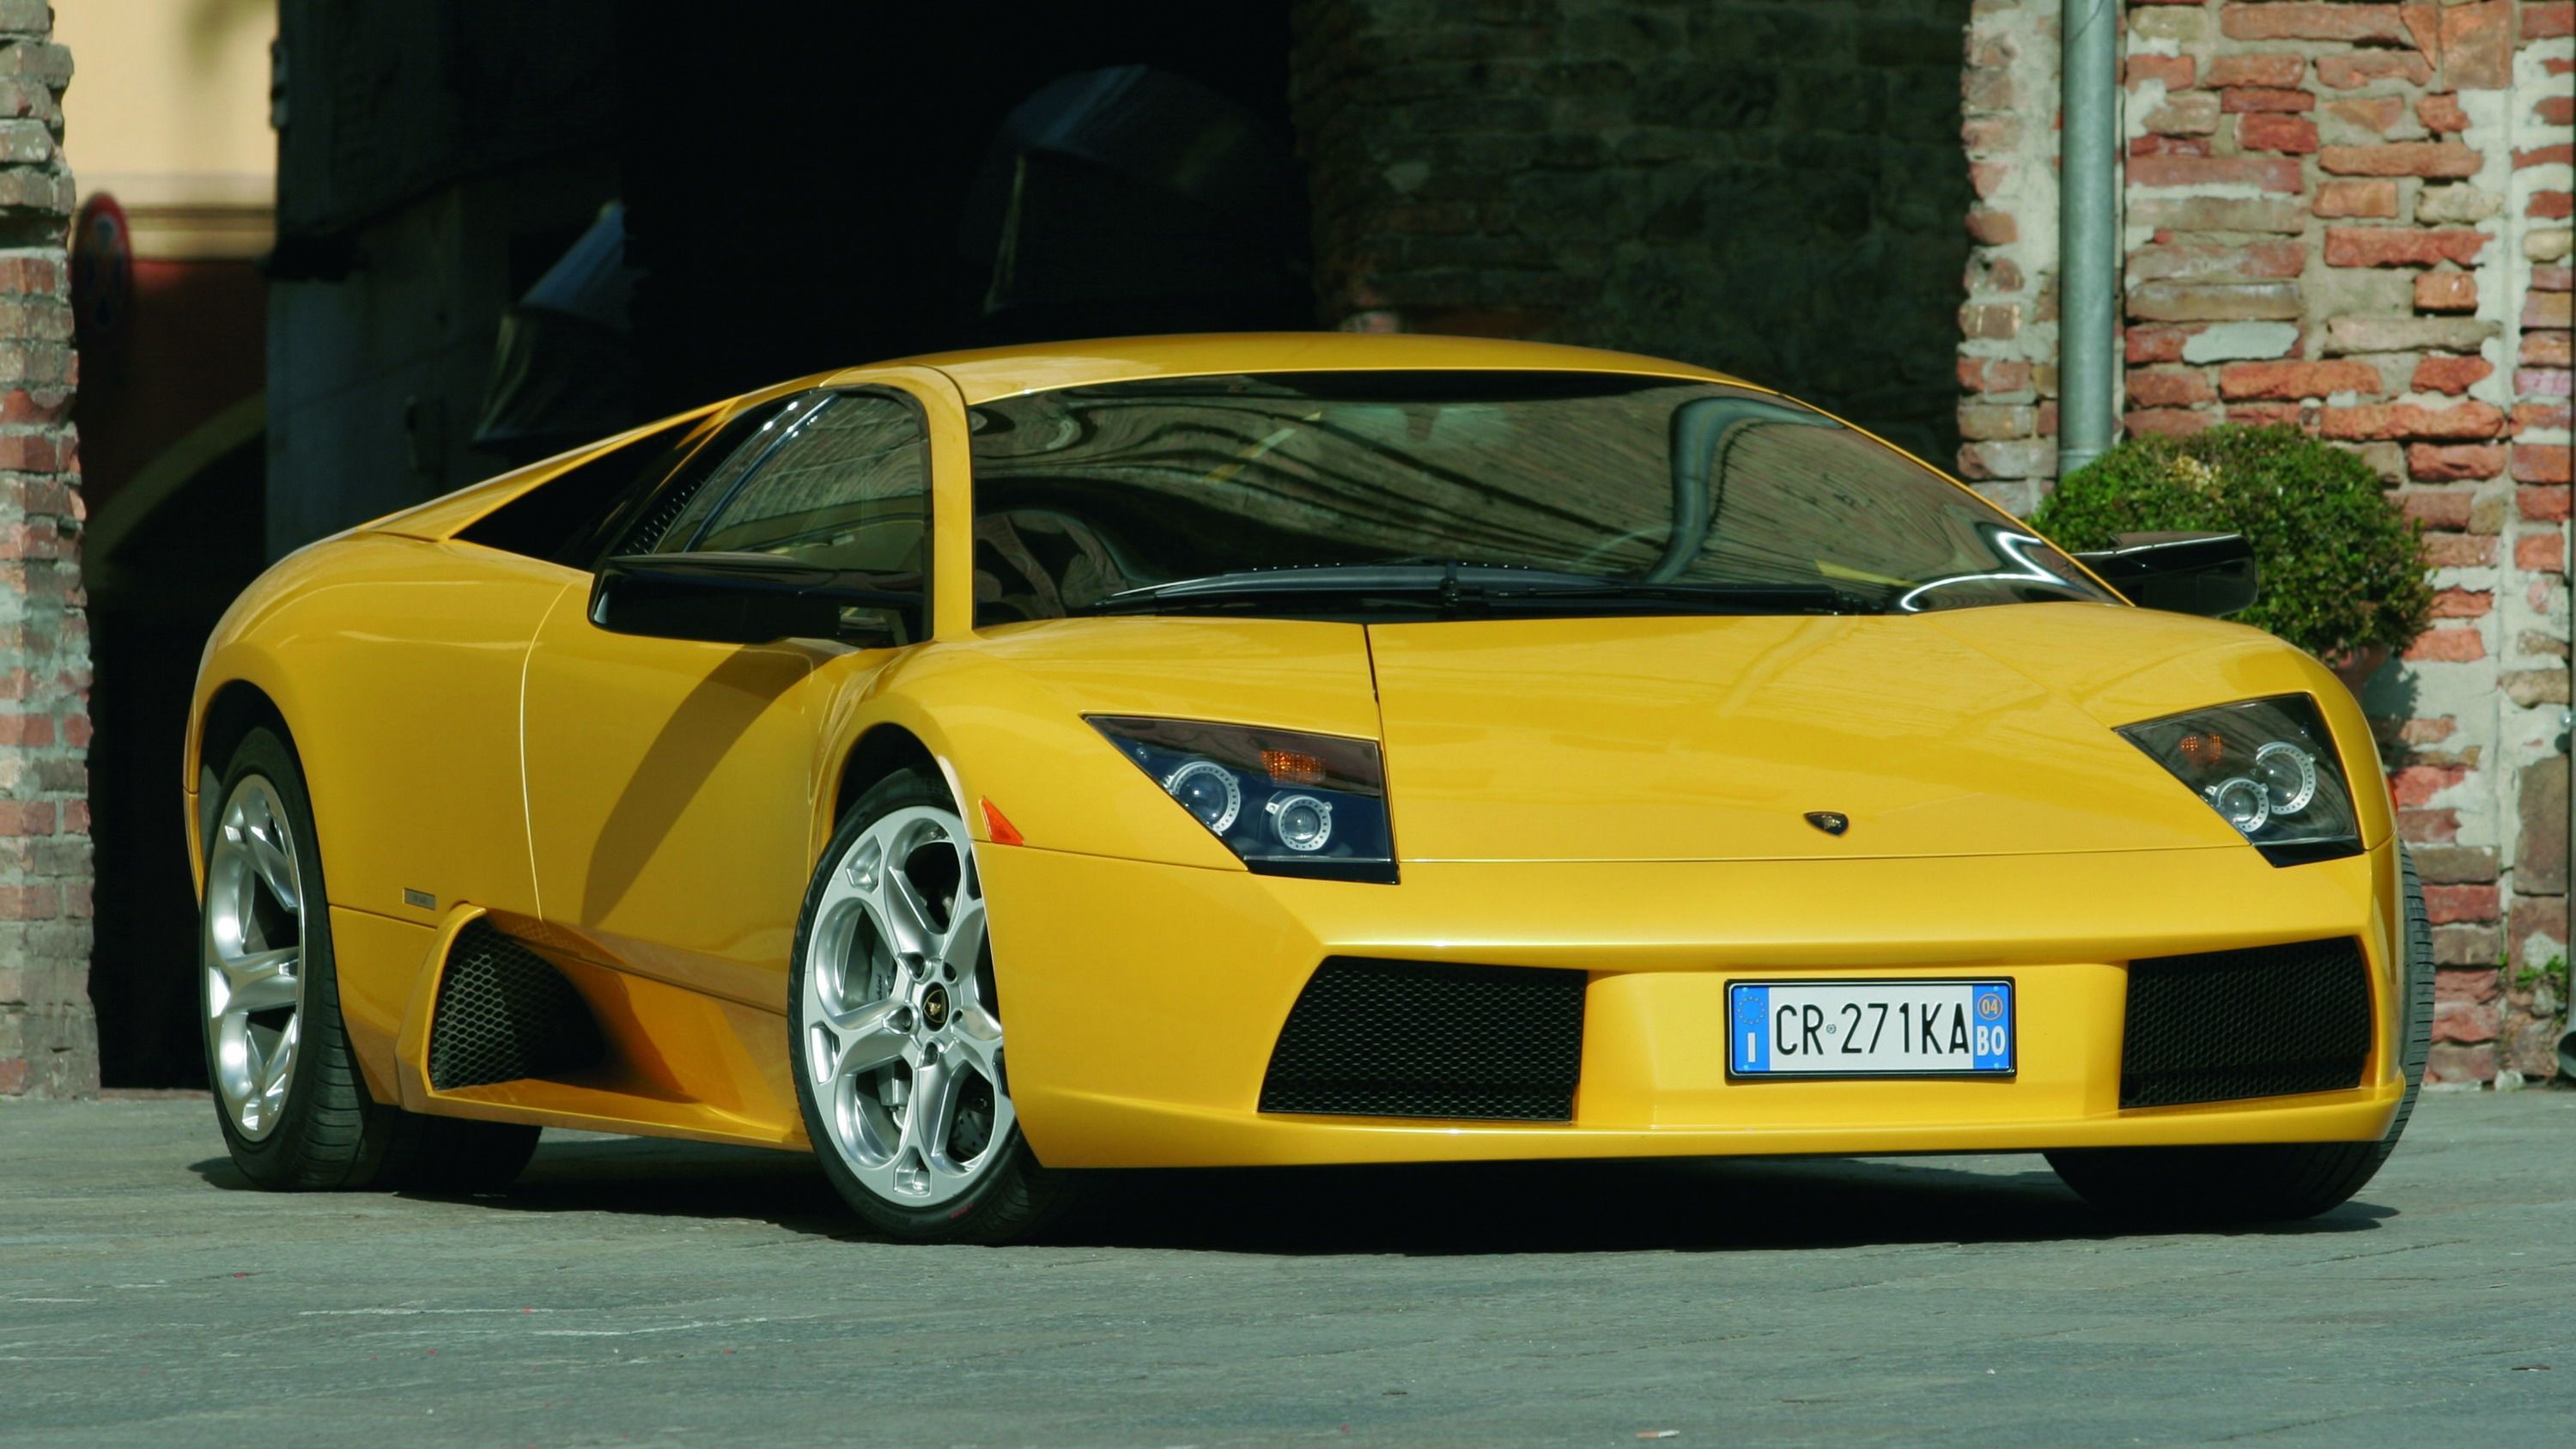 Bright Yellow Lamborghini Murcielago front end